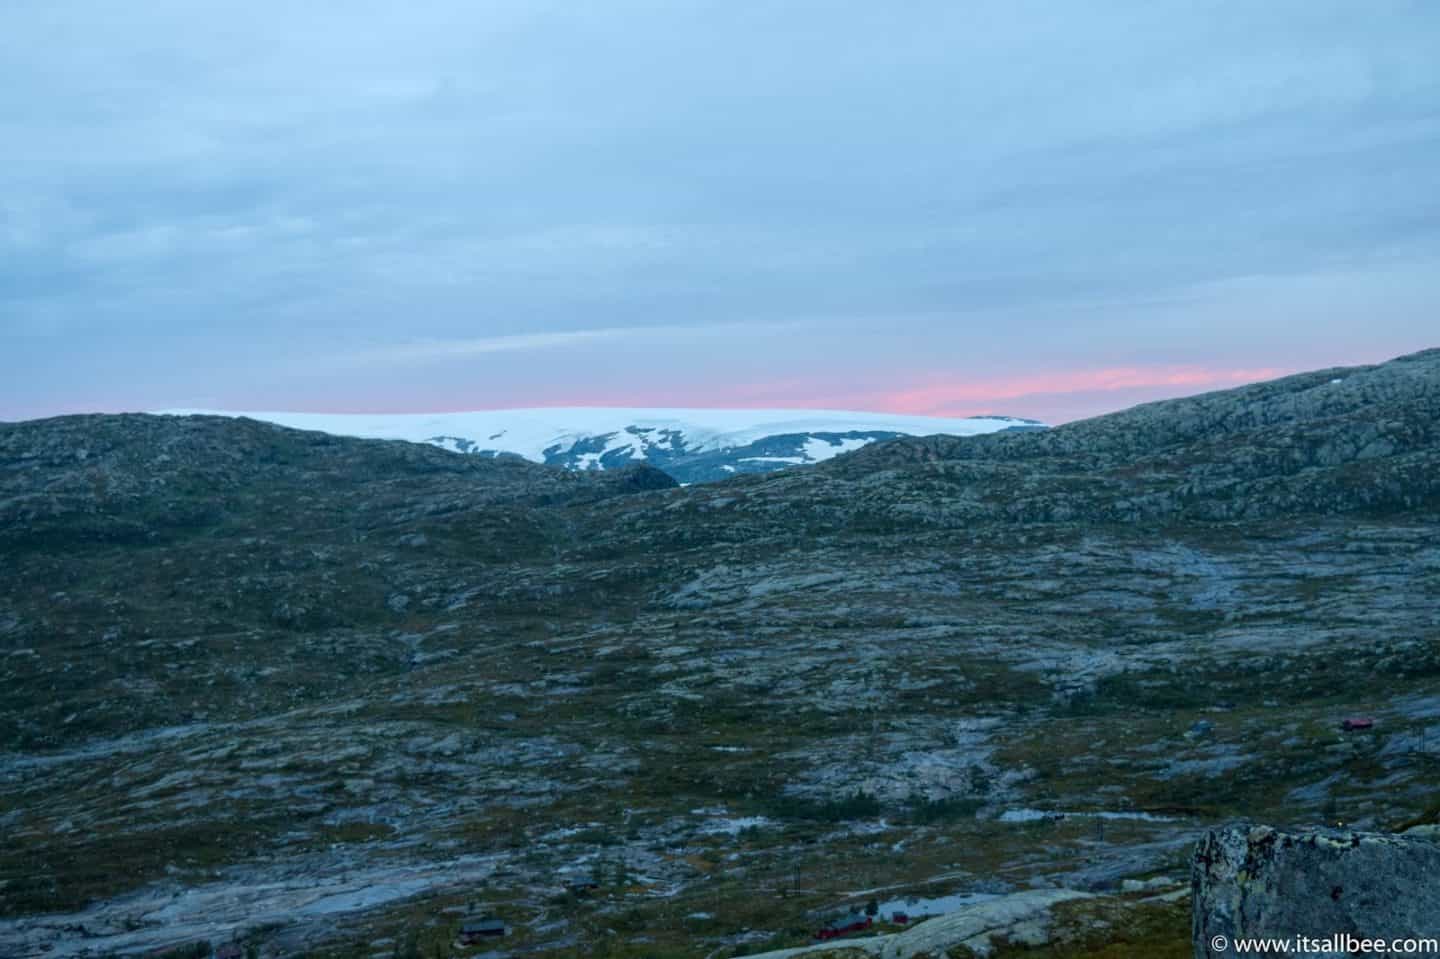 Norway's Trolltunga Hike From Bergen